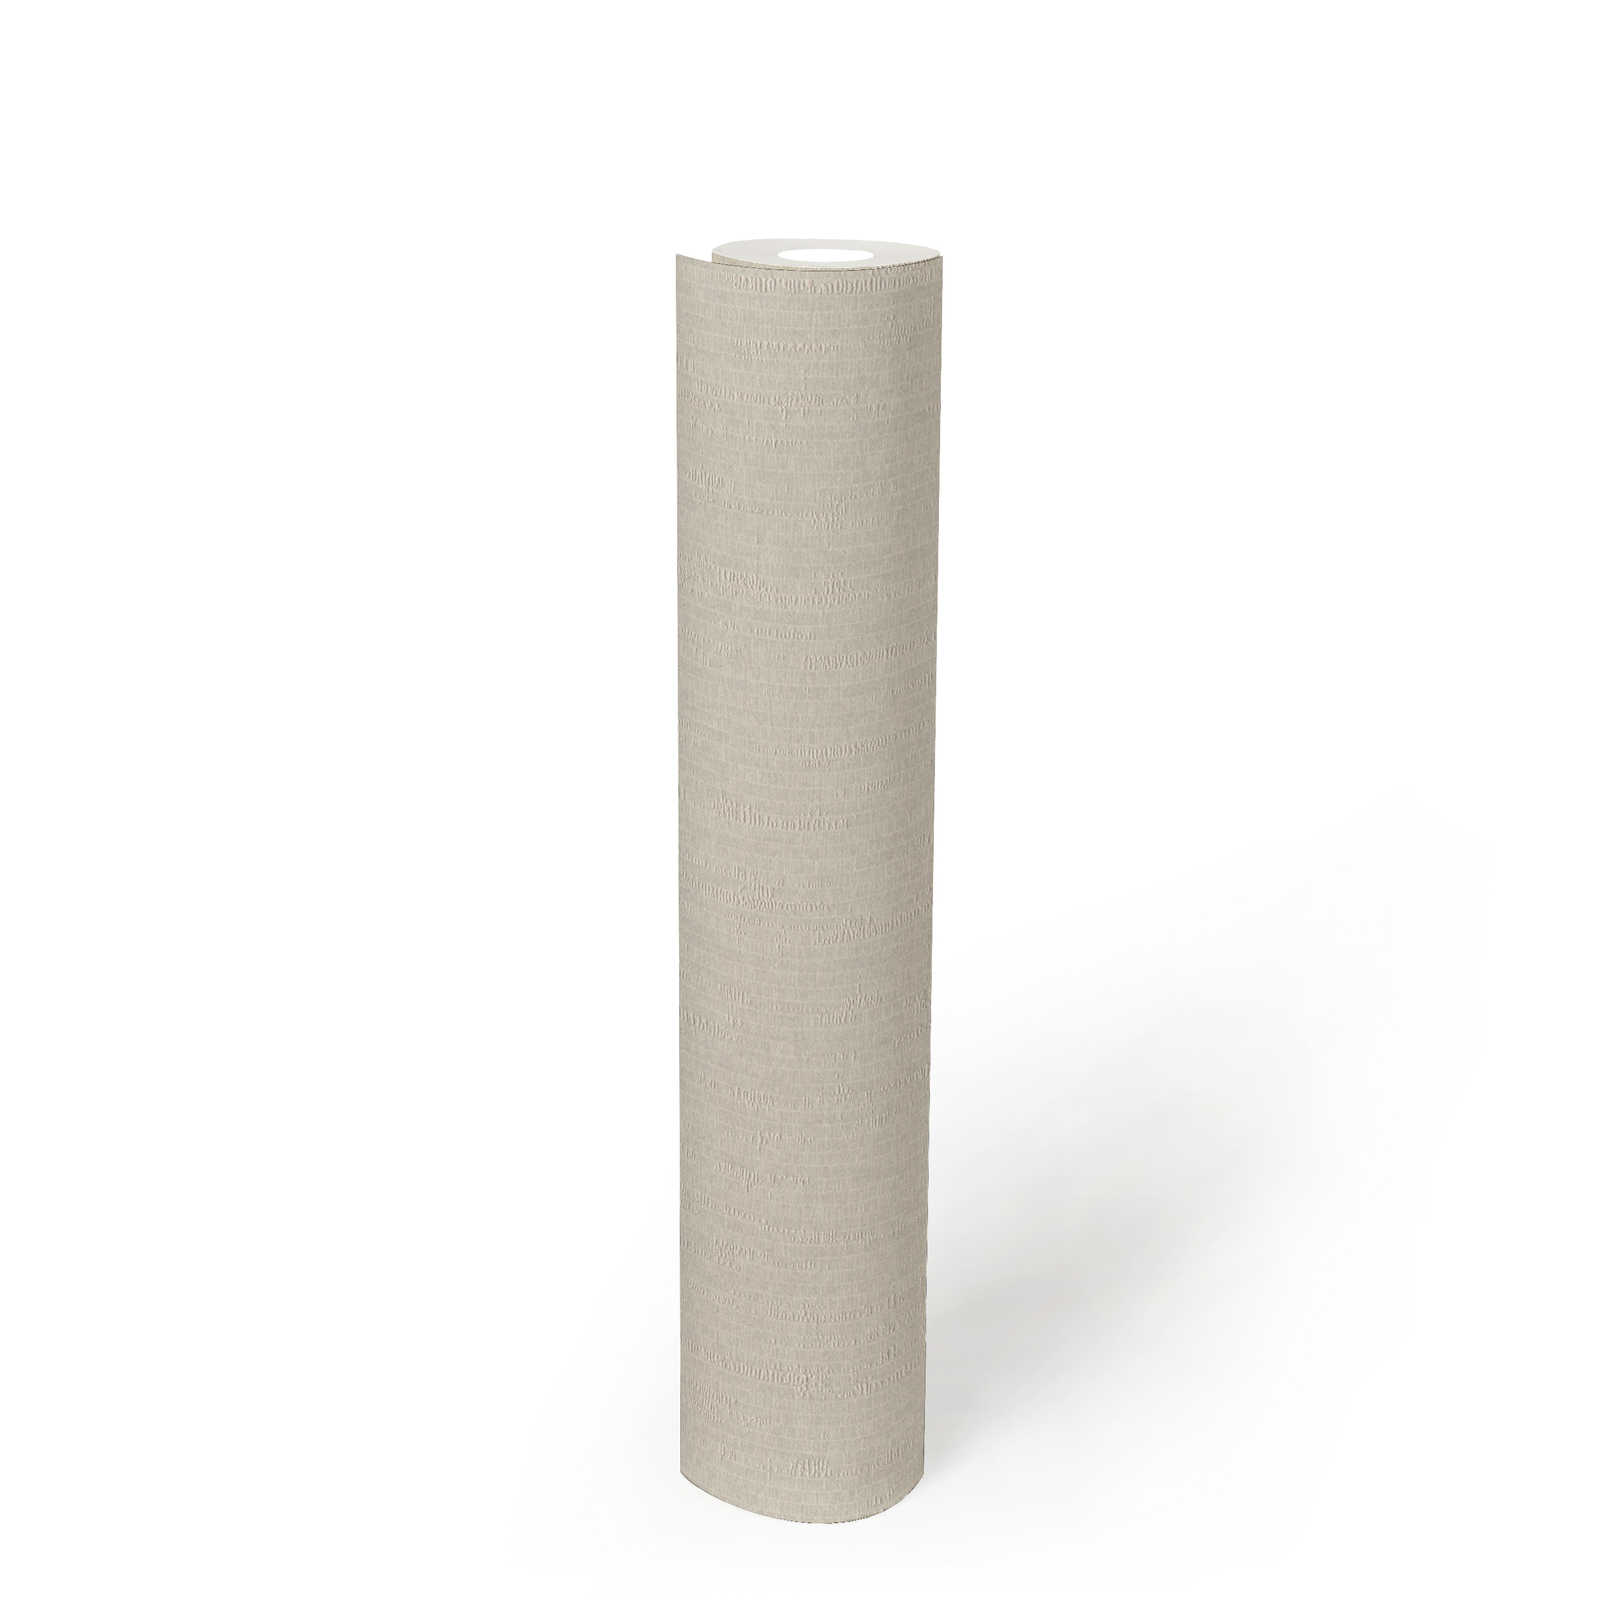             Crème wit patroonbehang met subtiele stoflook - Wit
        